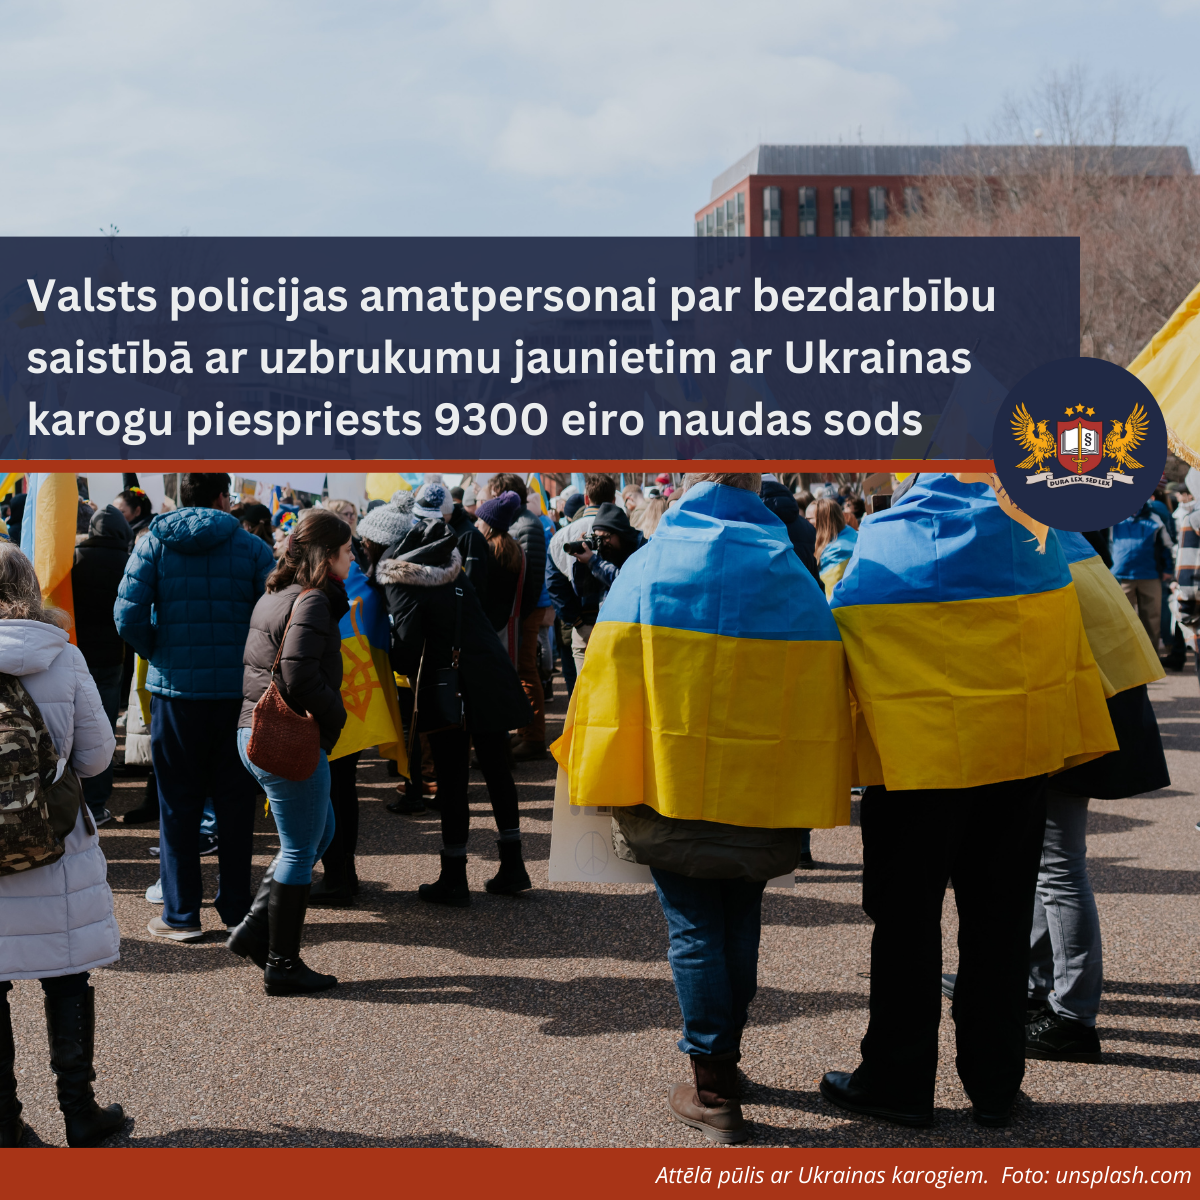 Attēls: Valsts policijas amatpersonai par bezdarbību saistībā ar uzbrukumu jaunietim ar Ukrainas karogu piespriests 9300 eiro naudas sods